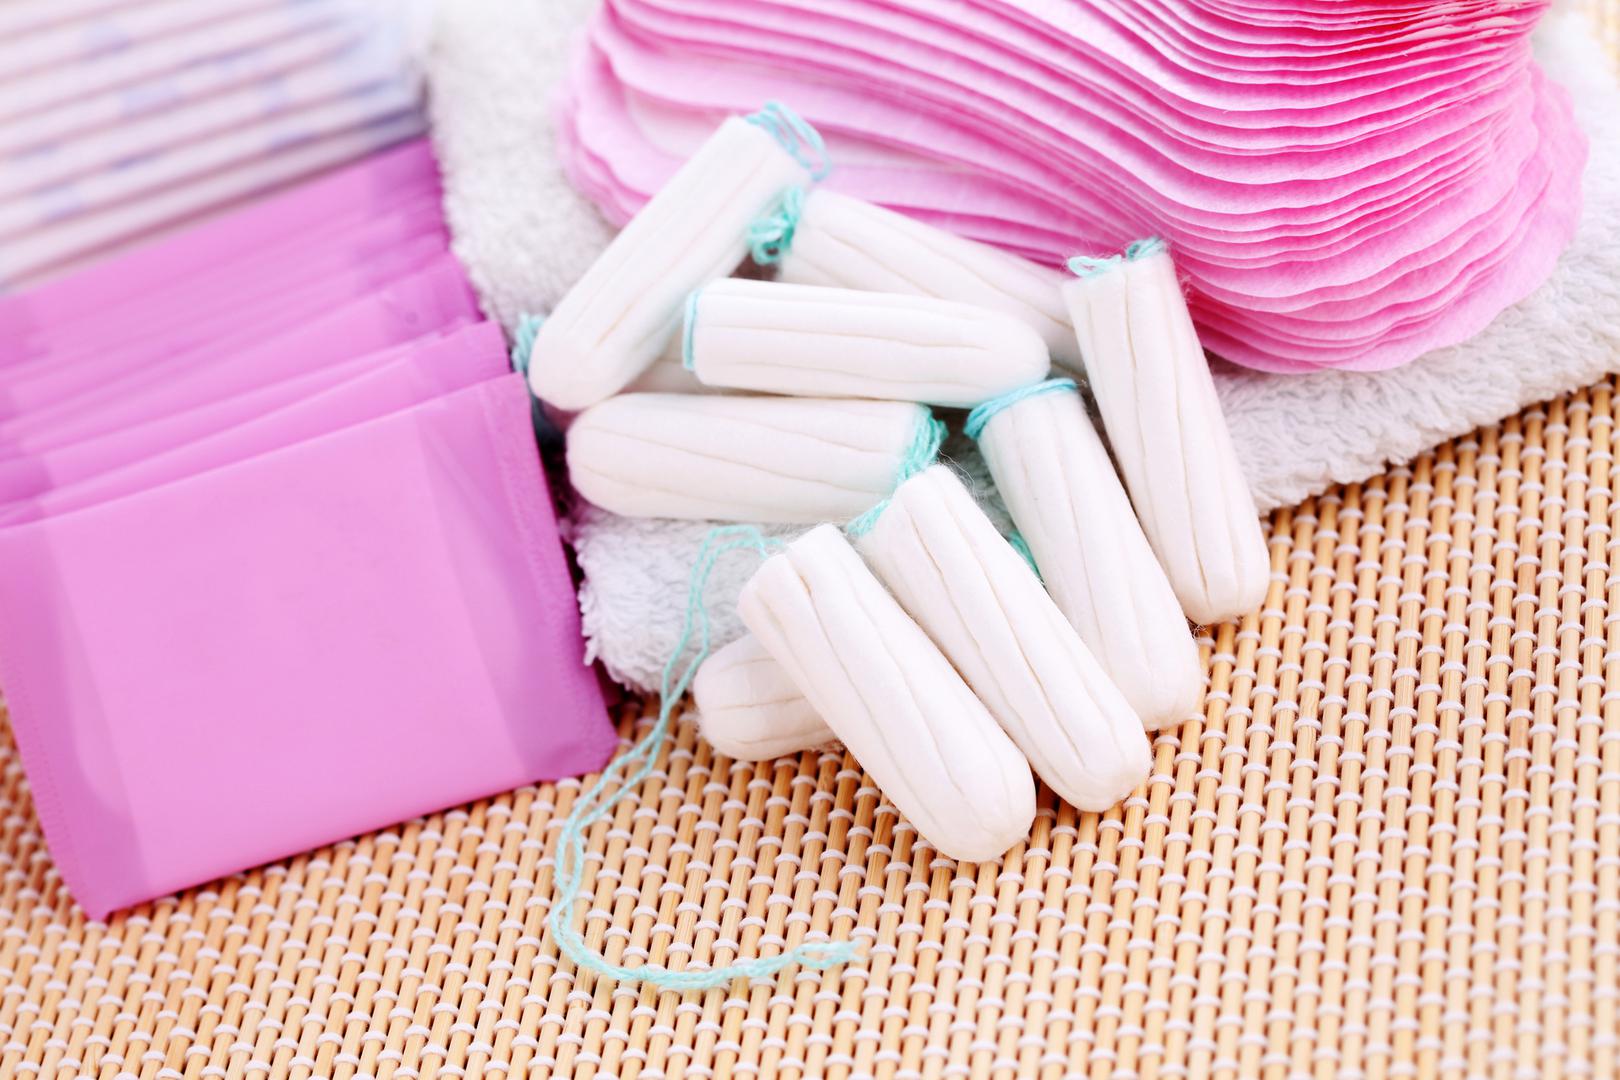 Uz tuširanje, higijena tijekom menstrualnog krvarenja znači redovno mijenjanje menstrualnih uložaka ili tampona. Stručnjaci tvrde kako postoji razlika i ne biste trebali jednako dugo držati tampone u usporedbi s ulošcima, odnosno, uložak je potrebno promijeniti najmanje jednom u četiri sata, a tampon svaka dva sata. 